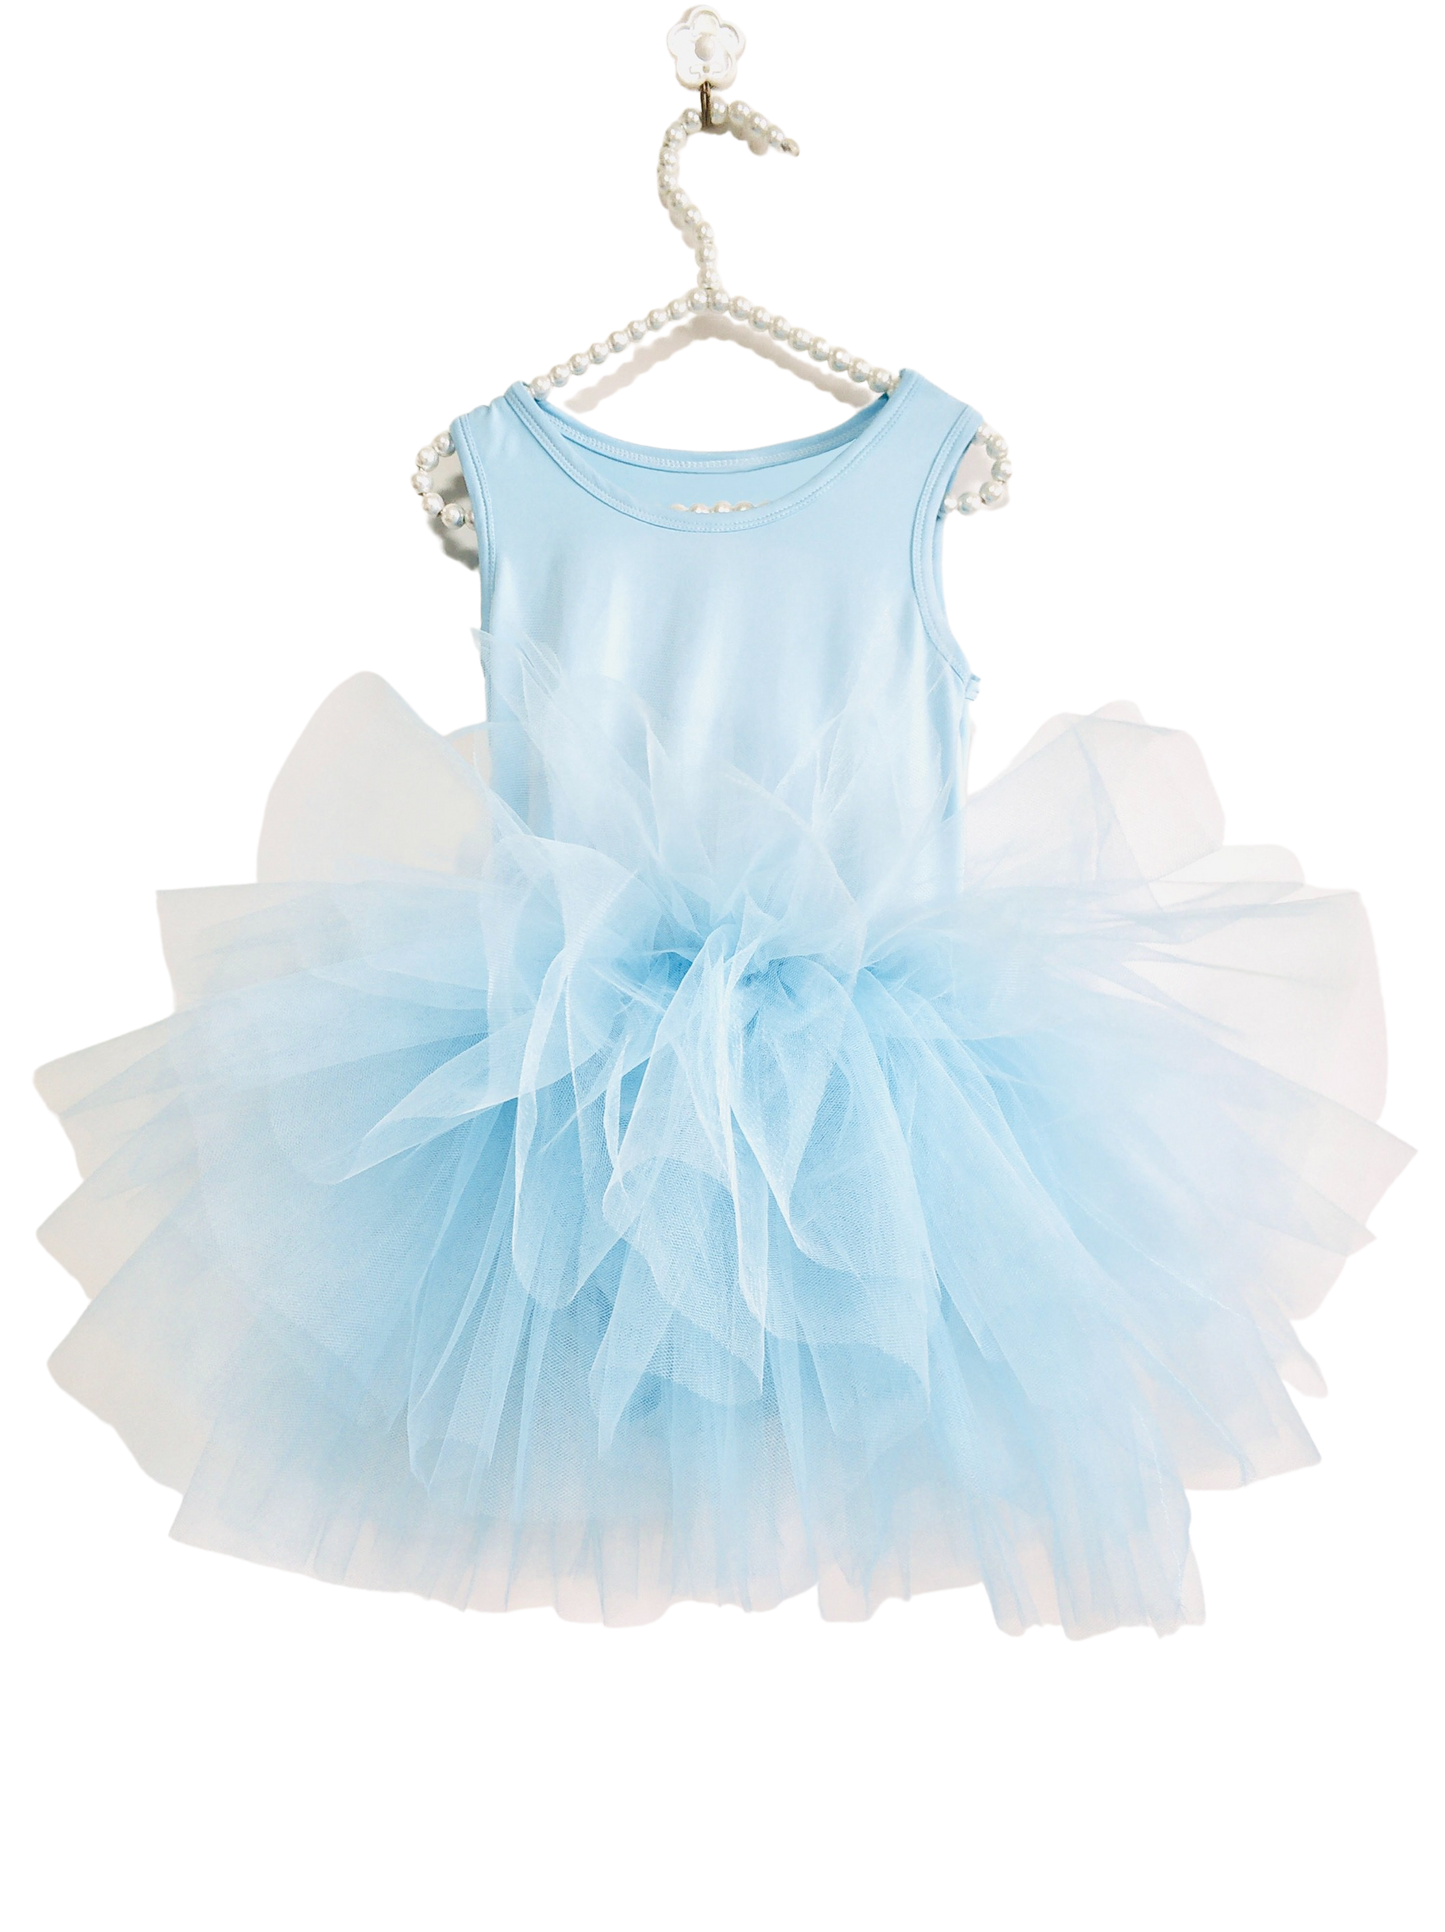 Dress | TIMELESS TUTU DRESS light blue